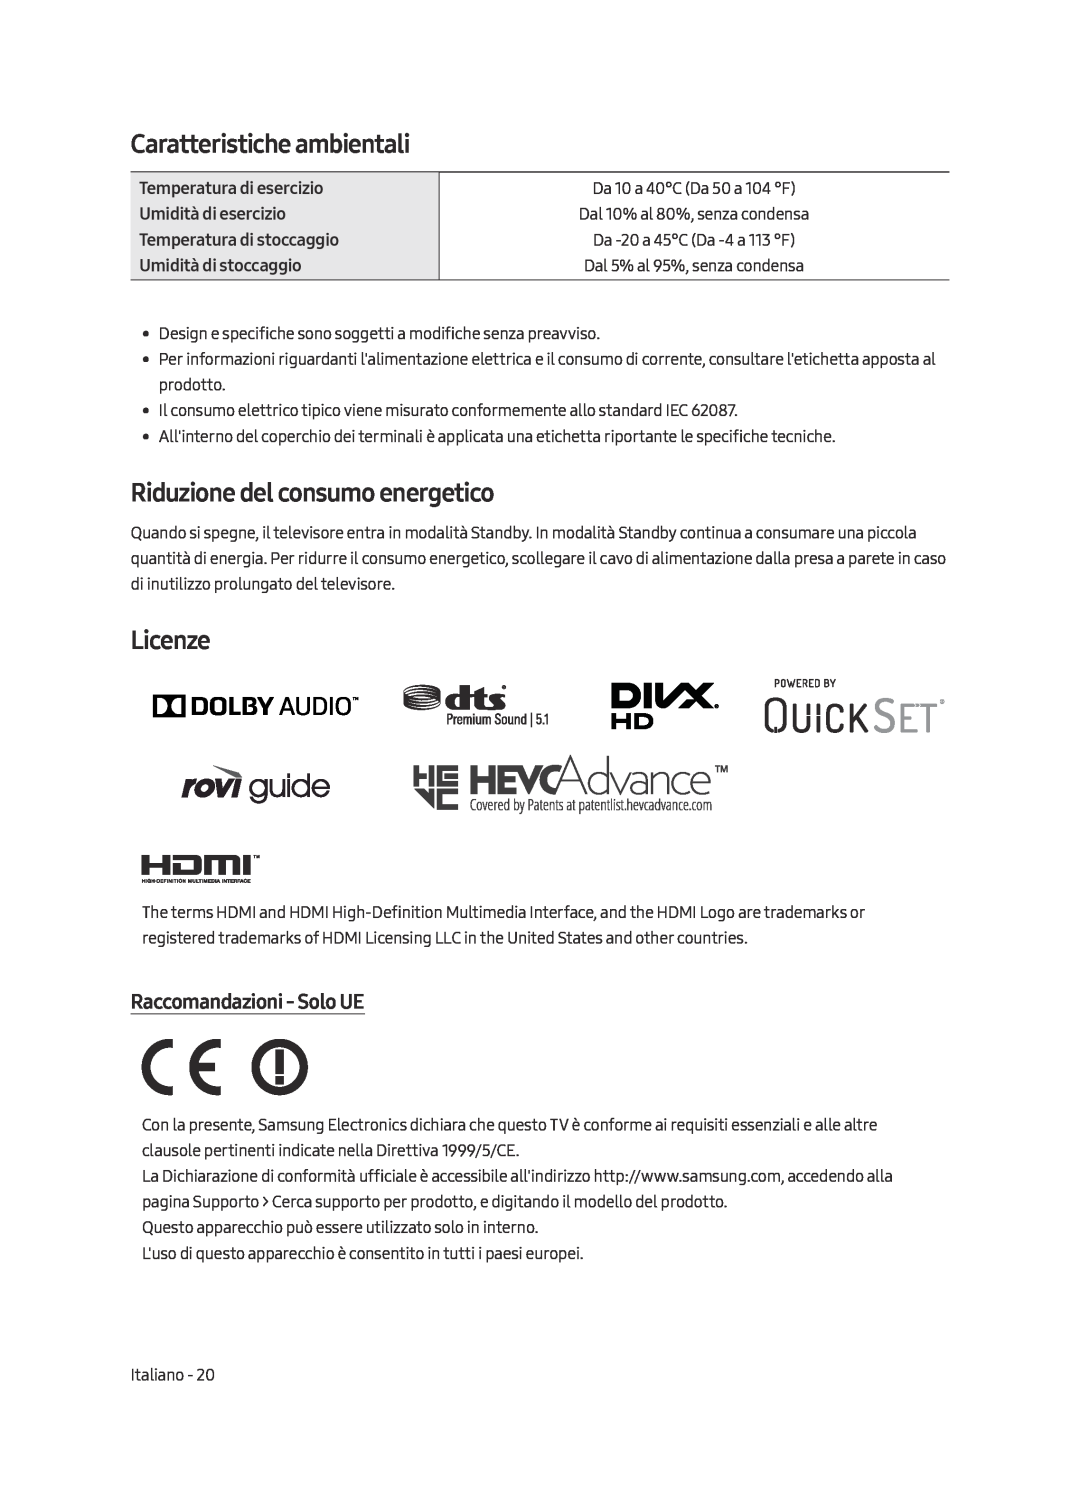 Samsung UE75MU7000TXZG Caratteristiche ambientali, Riduzione del consumo energetico, Licenze, Raccomandazioni - Solo UE 